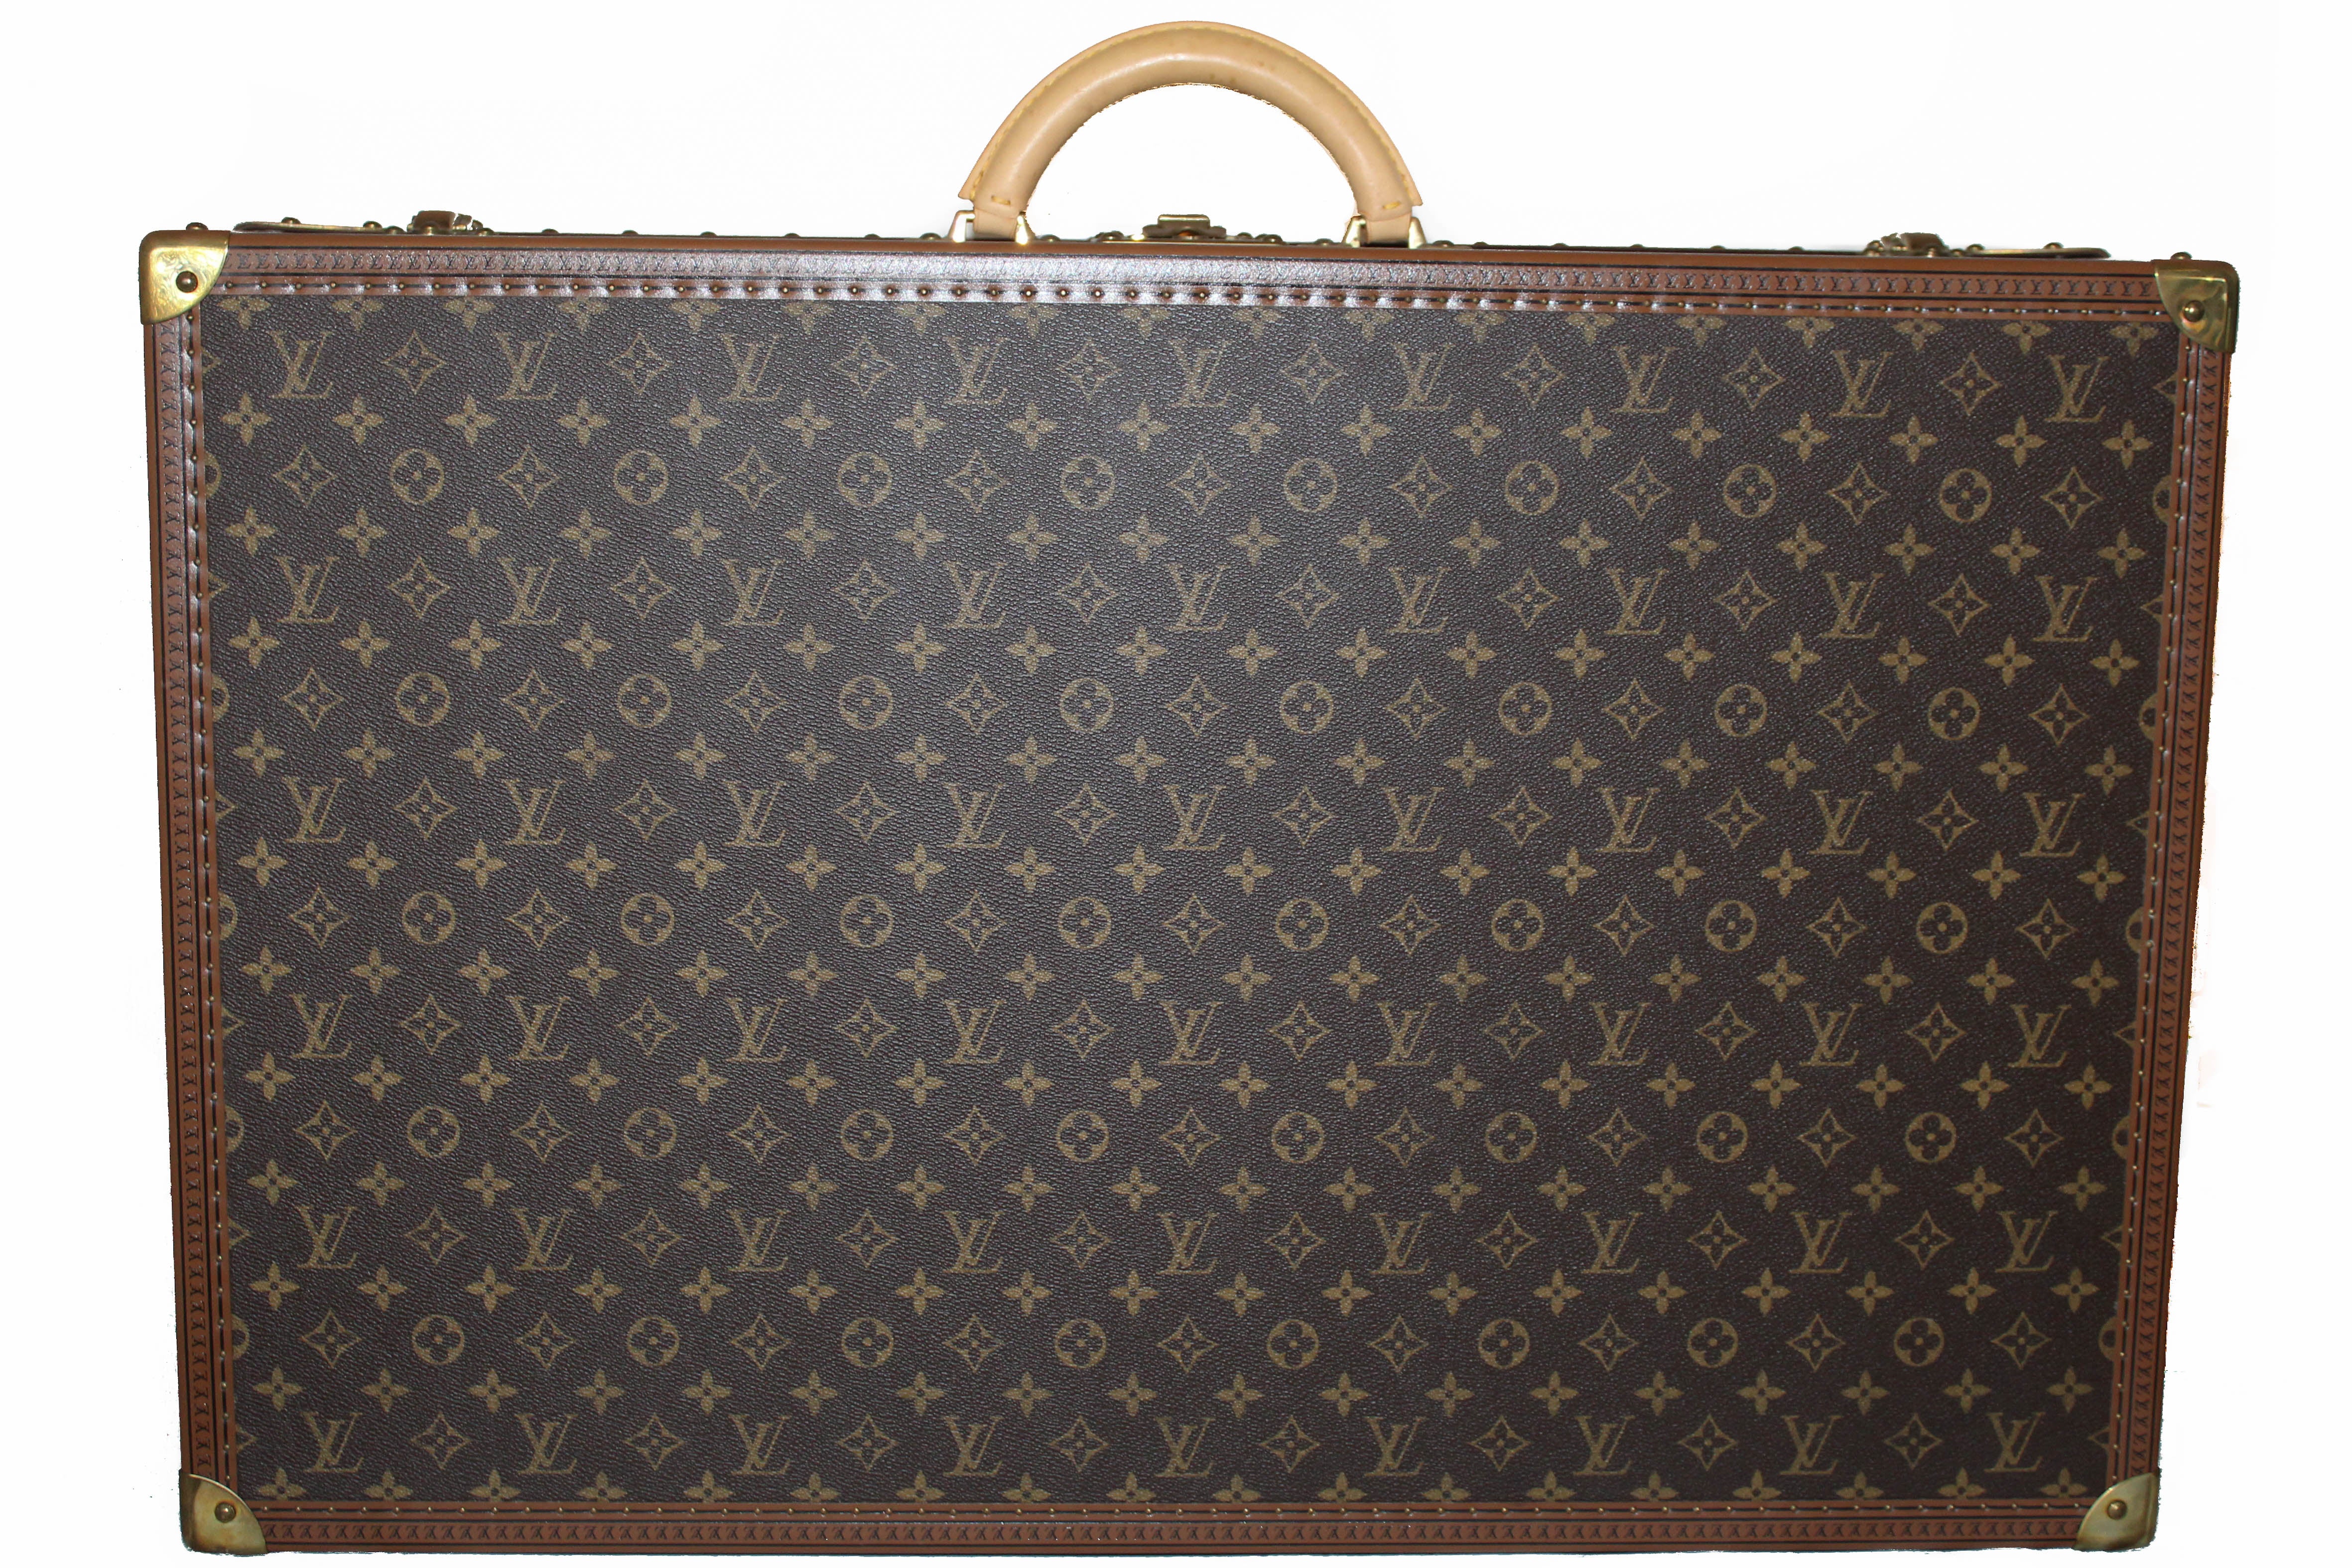 LOUIS VUITTON Auth Suitcase Monogram LV Travel Bag Case Large 20"  Shoulder Strap